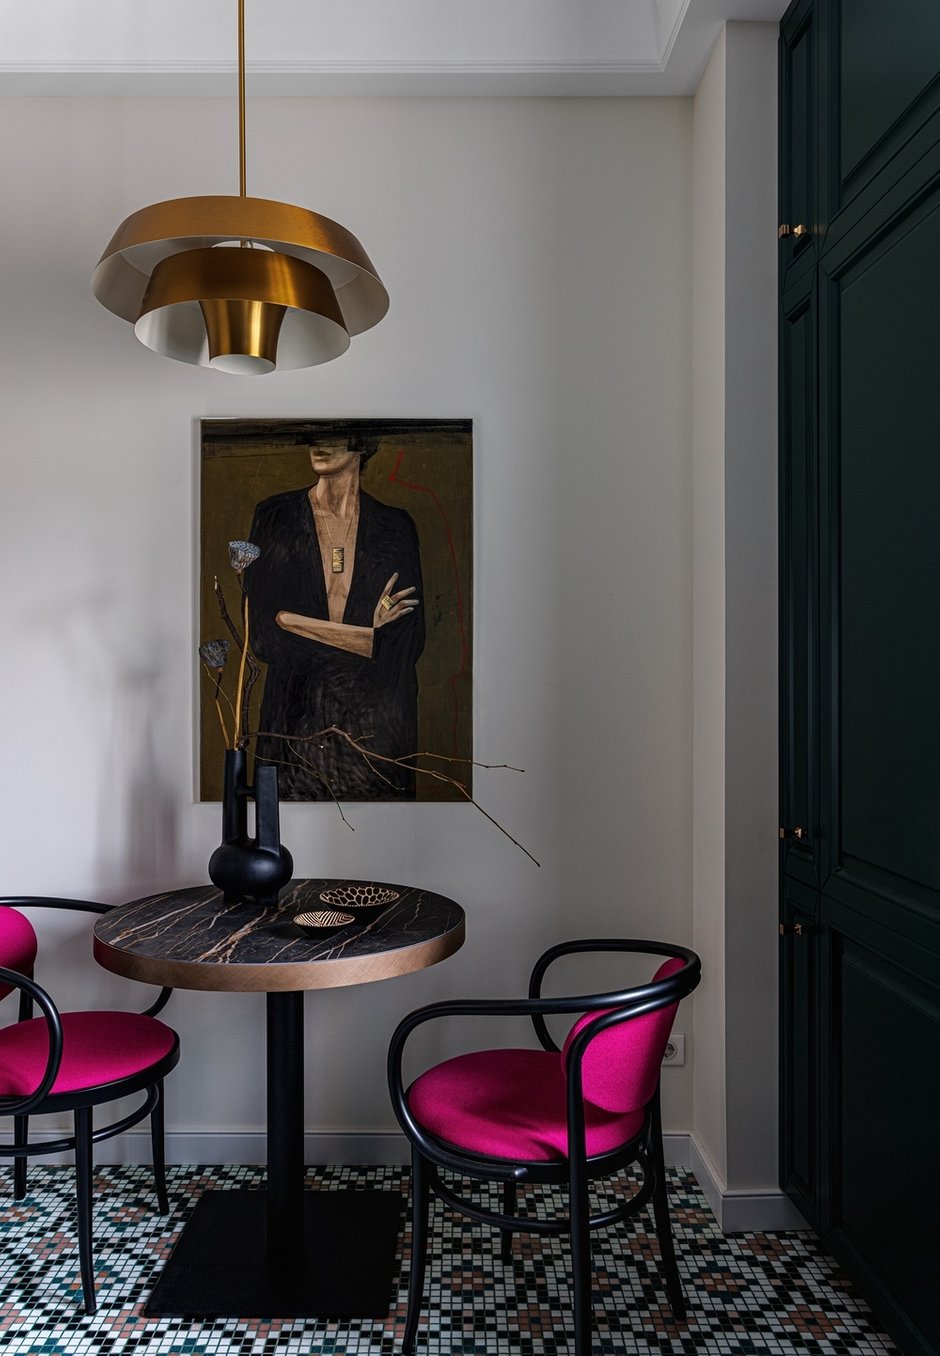 Кухня получилась яркой и немного напоминающей атмосферу парижского кафе — зеленый гарнитур, стулья Thonet в цвете фуксия, лампа в ретростиле и картина над обеденным столом с загадочной дамой, вызывающей ассоциации с Ахматовой.